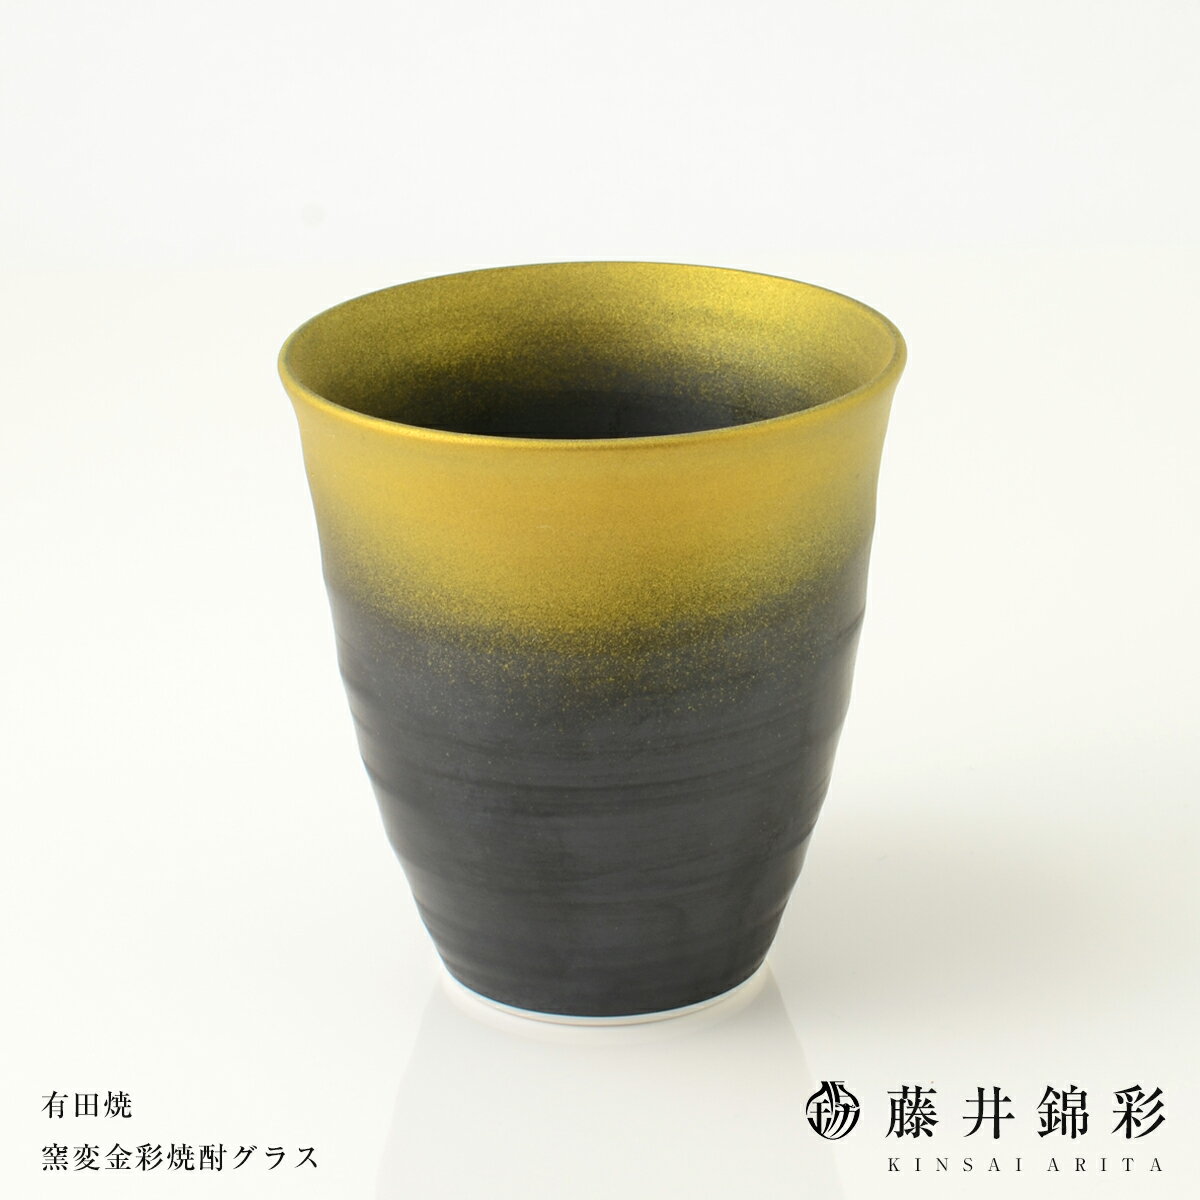 A10-91【ふるさと納税】陶芸家 藤井錦彩作 陶器 窯変金